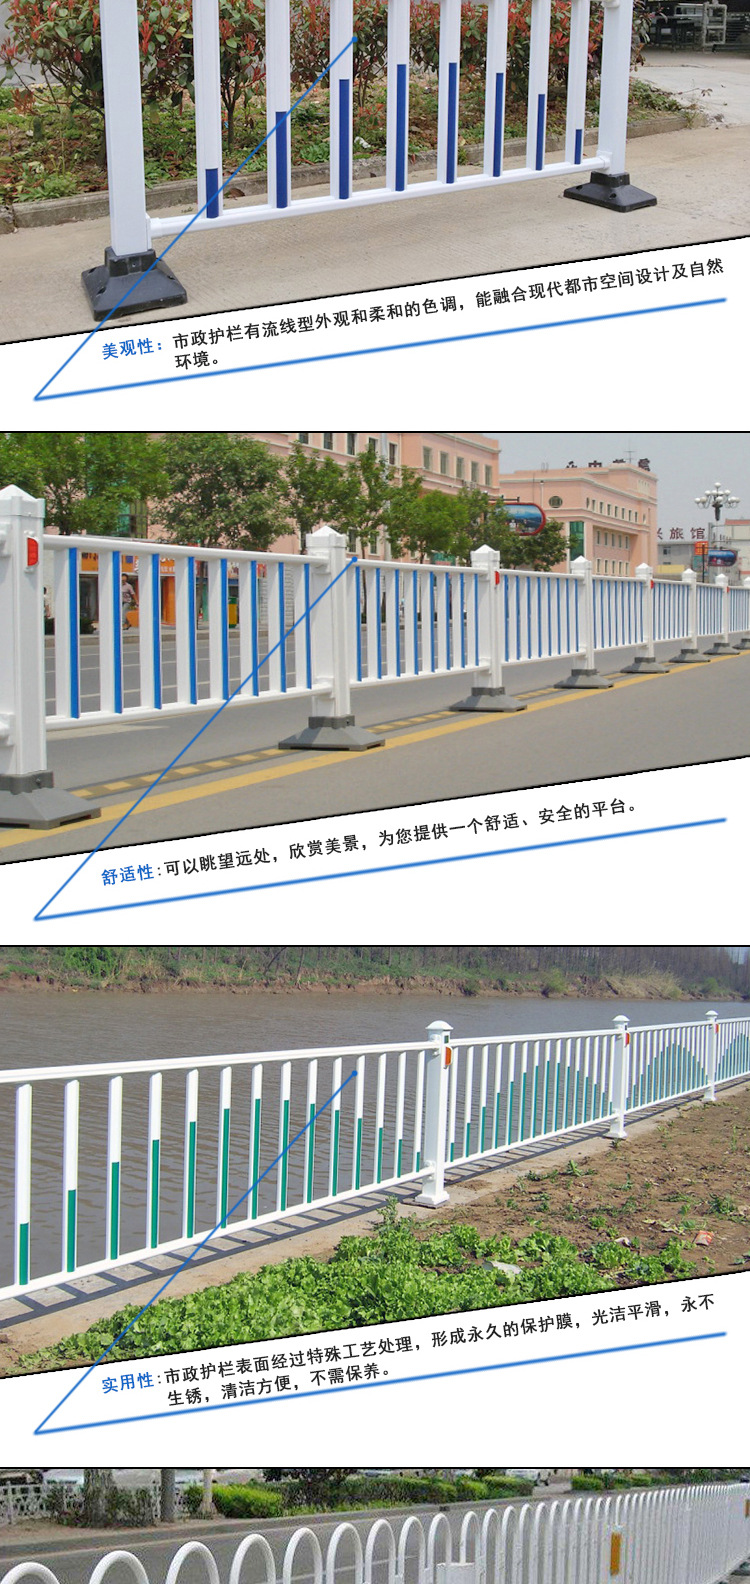 现货供应 道路锌钢护栏|市政道路交通防护栏|喷塑锌钢市政护栏示例图2